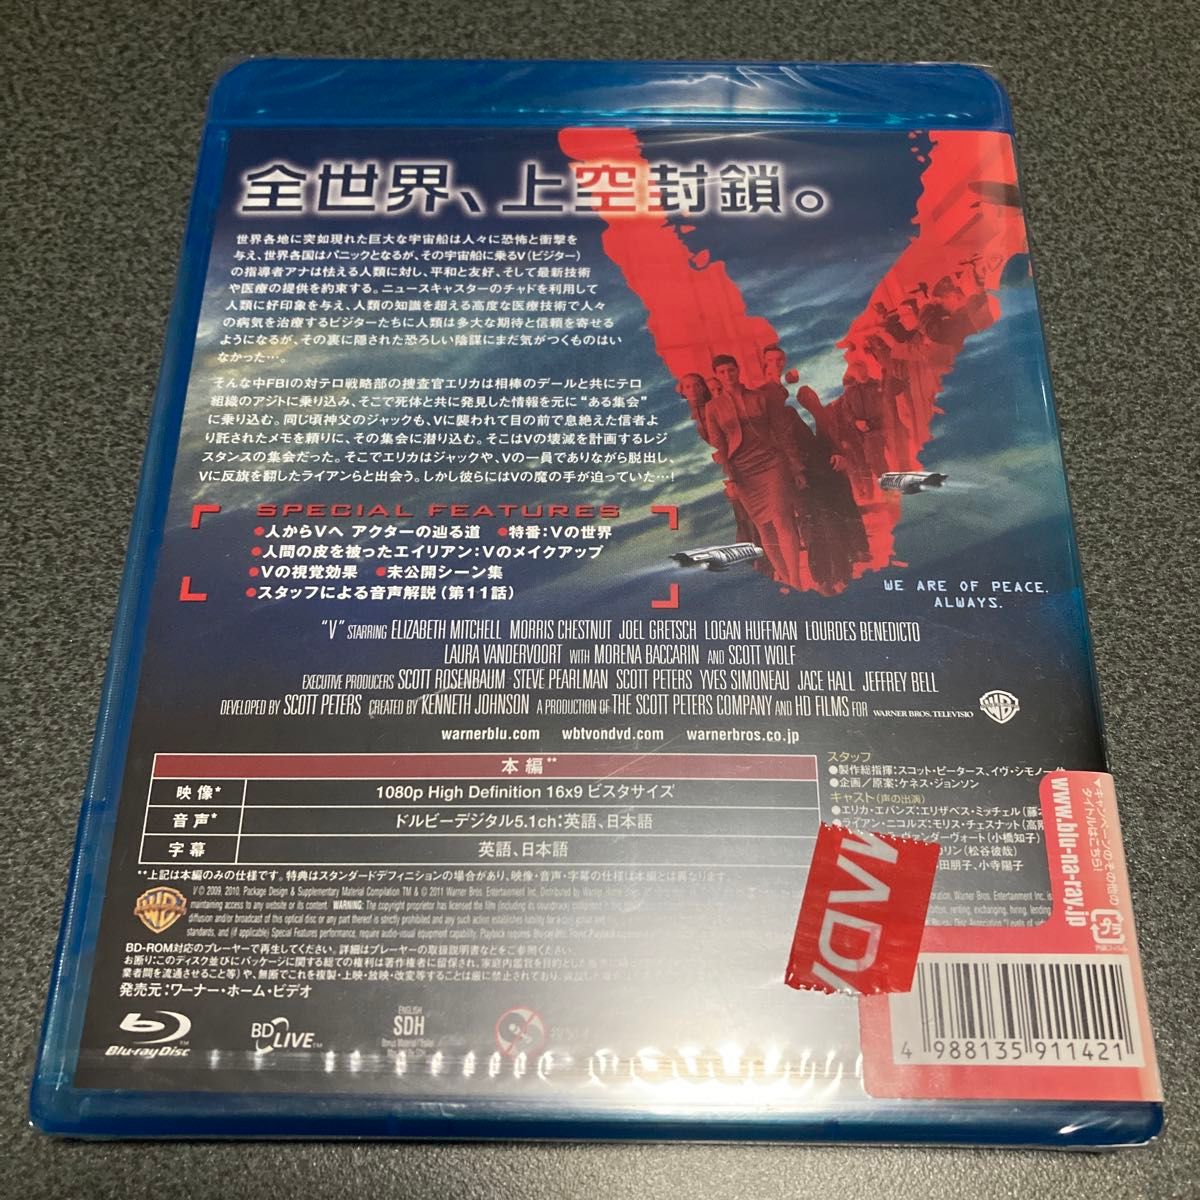 V ［ビジター］ファースト・シーズン コンプリート・ボックス〈2枚組〉ブルーレイ Blu-ray